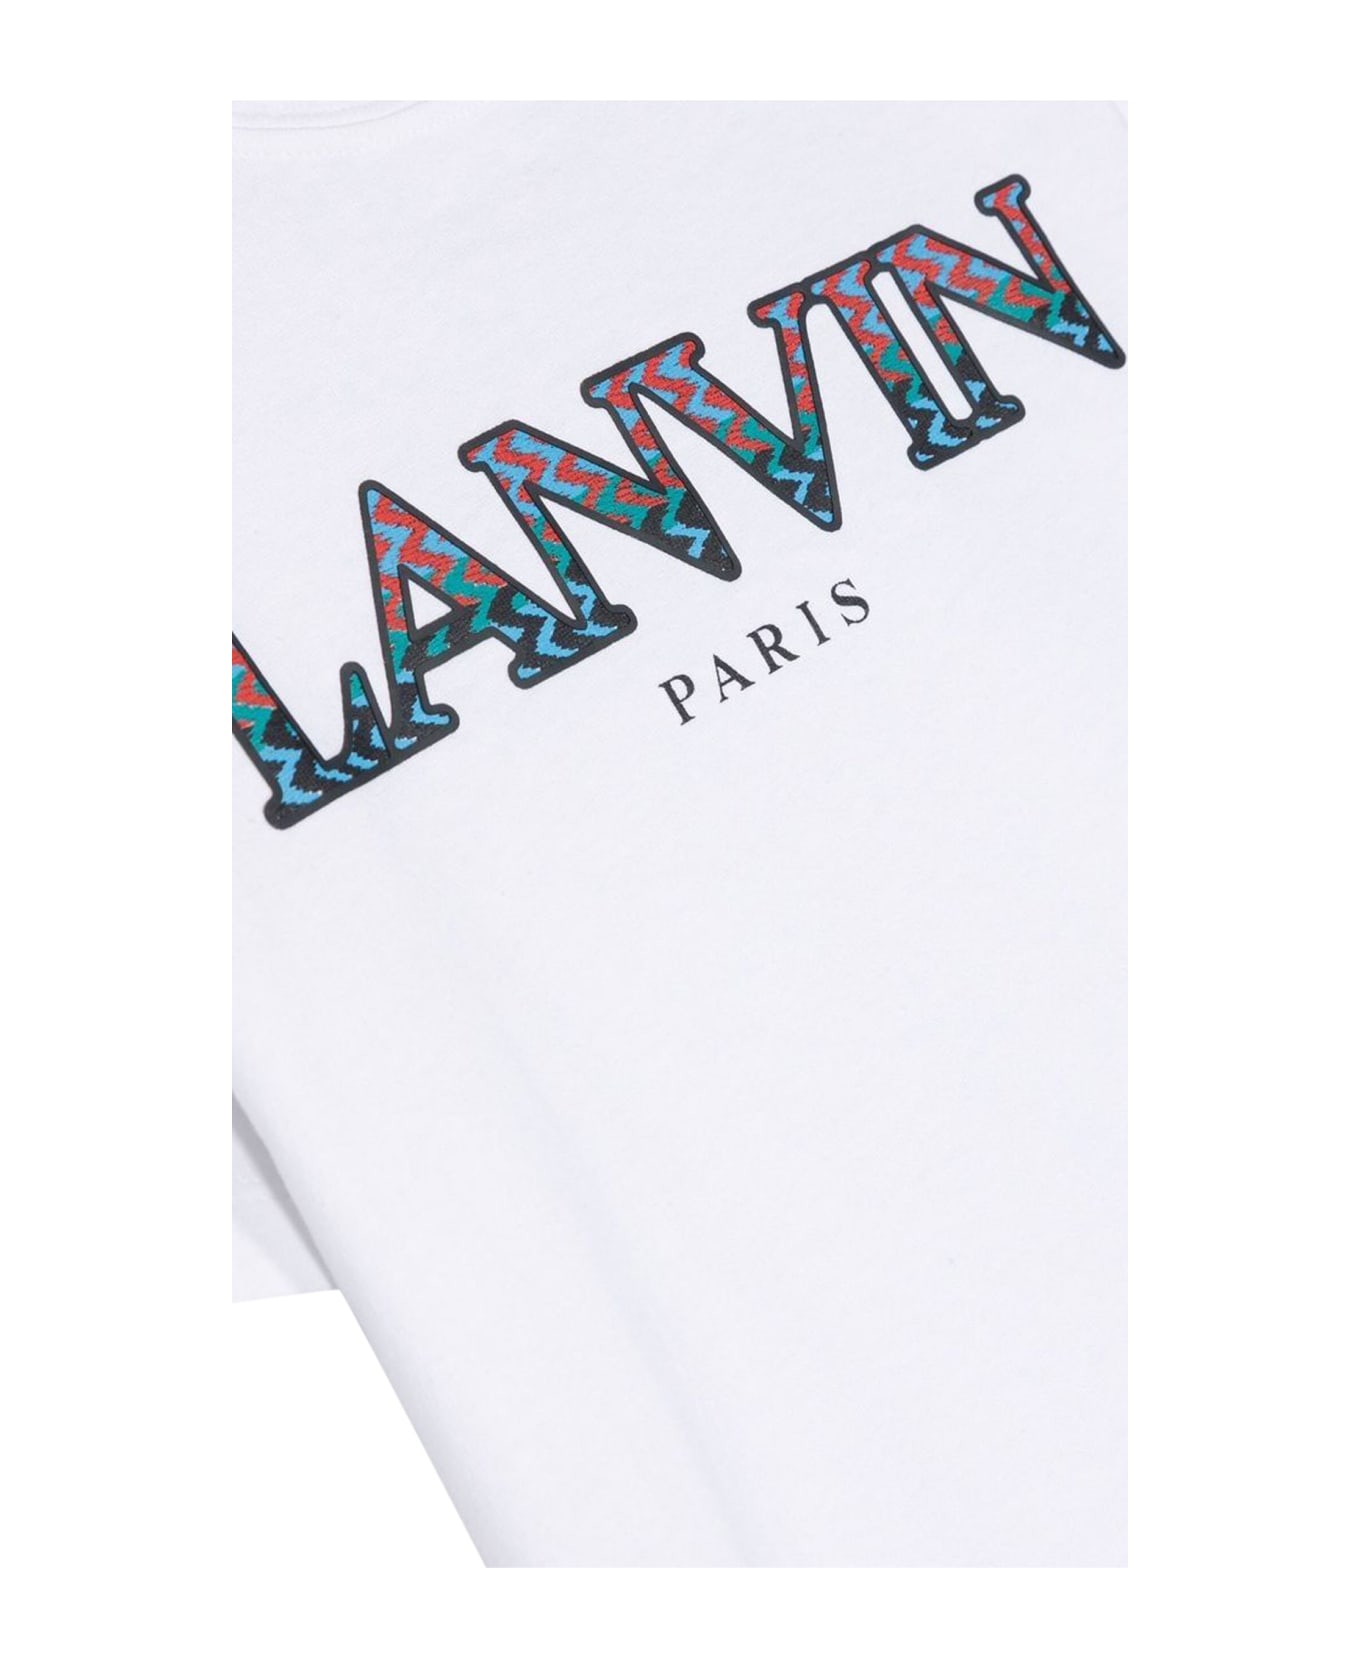 Lanvin Two-tone Mc Logo T-shirt - BIANCO